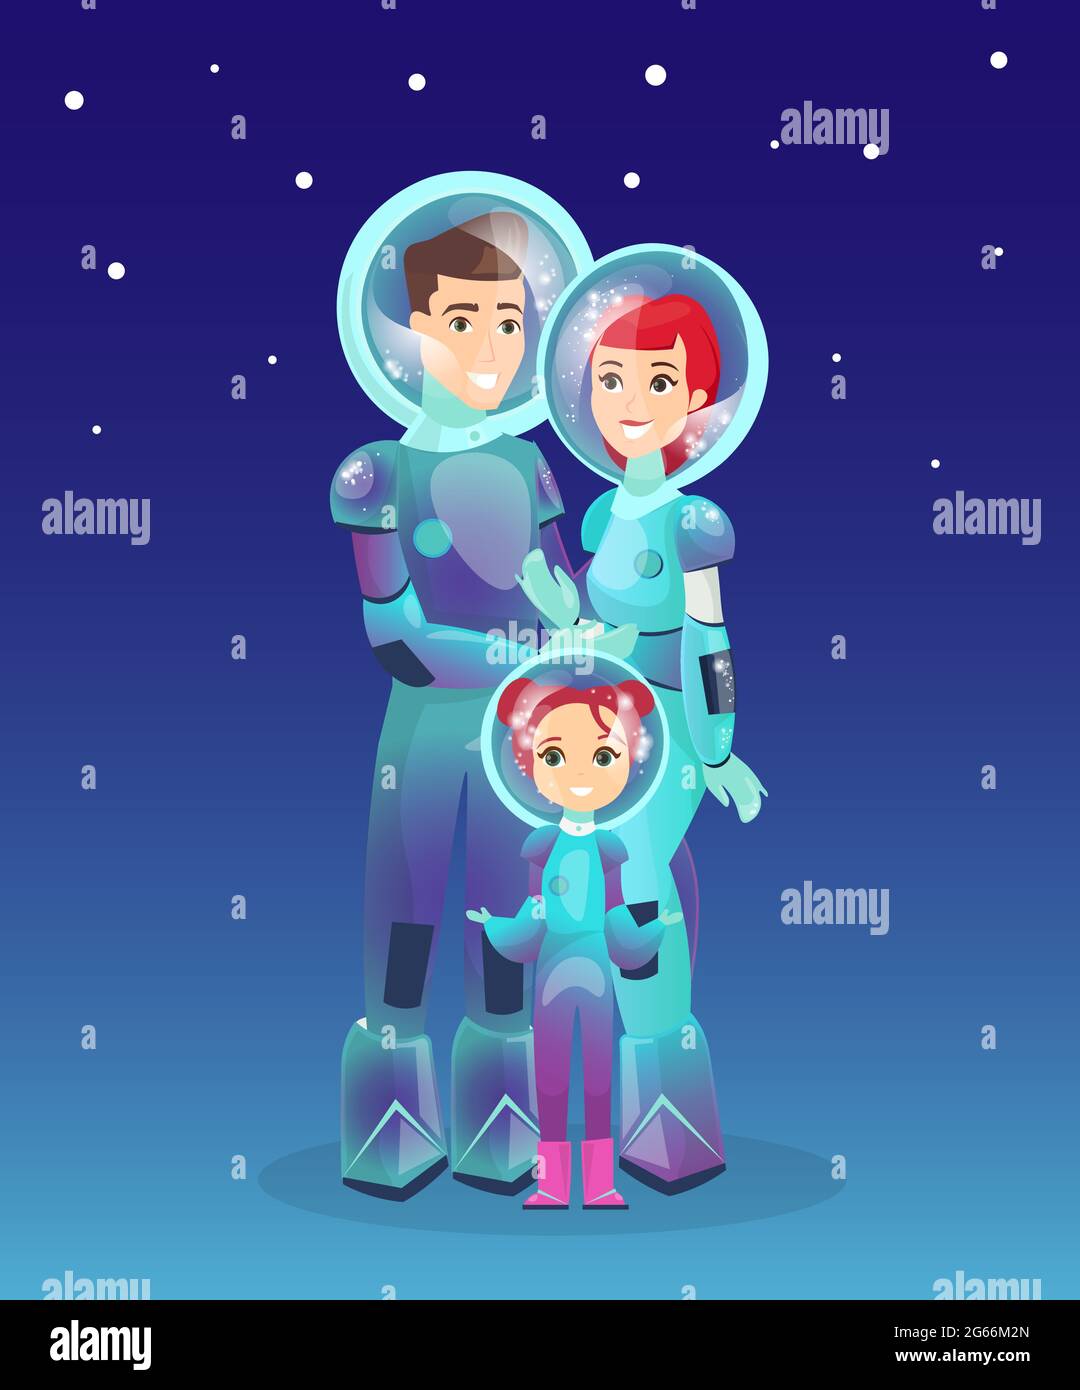 Illustration vectorielle de la famille des astronautes, de l'astronaute, des personnes dans l'espace. Concept futuriste des gens. Colonisation de Mars. Femme, homme, enfant Illustration de Vecteur